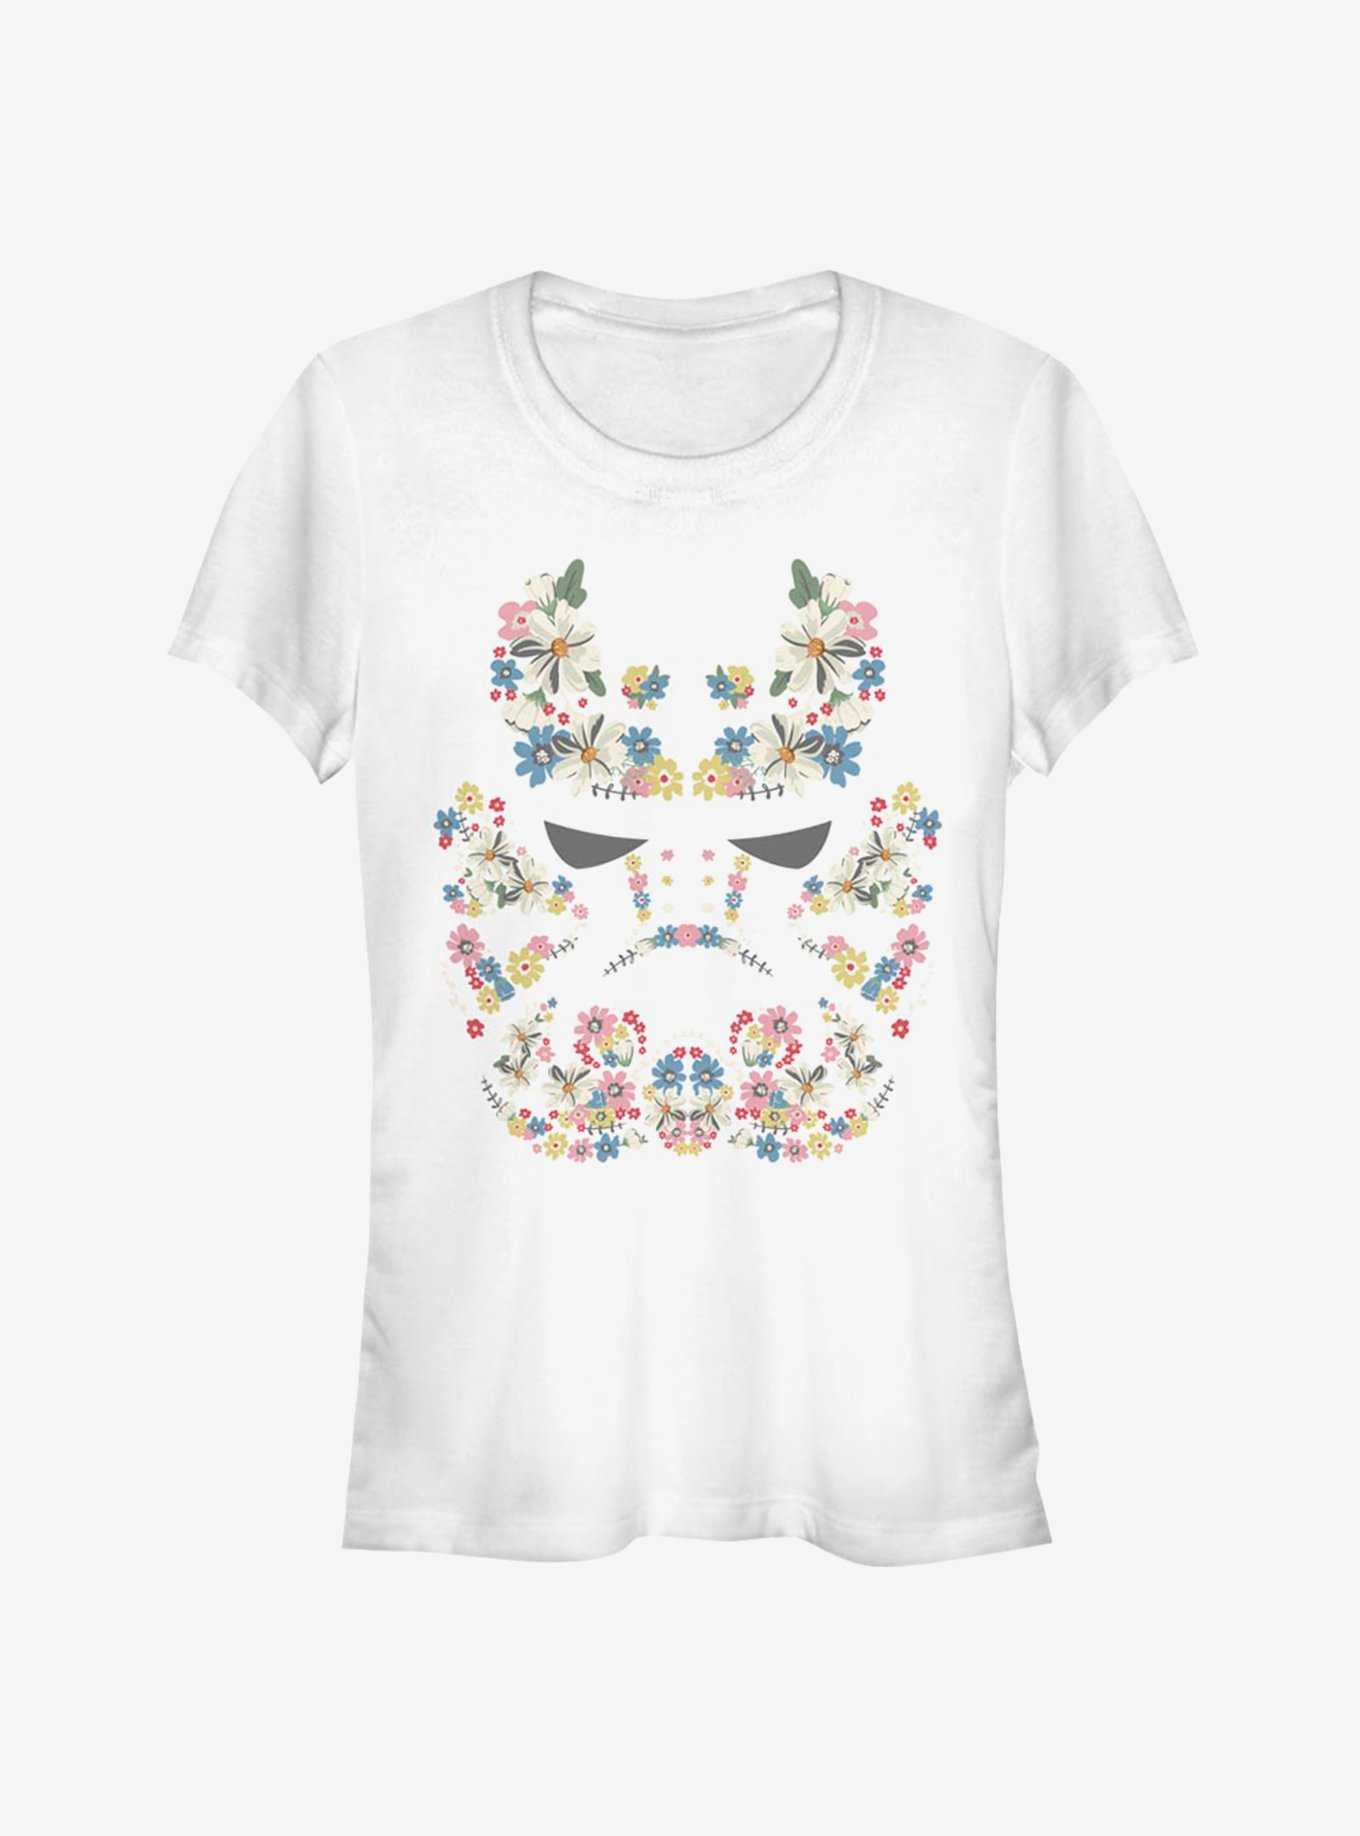 Star Wars Floral Trooper Girls T-Shirt, , hi-res